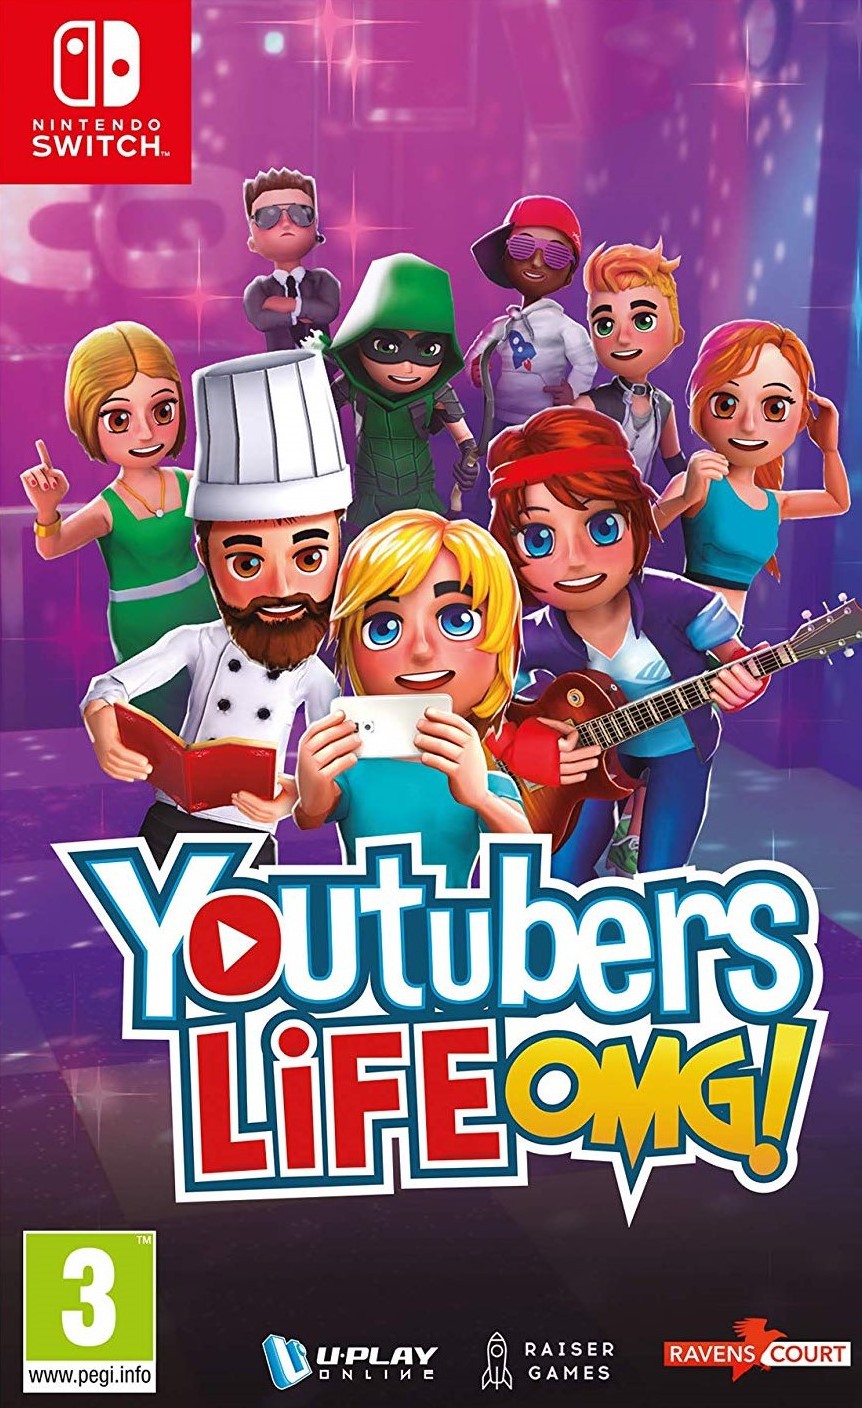 YouTubers Life OMG!